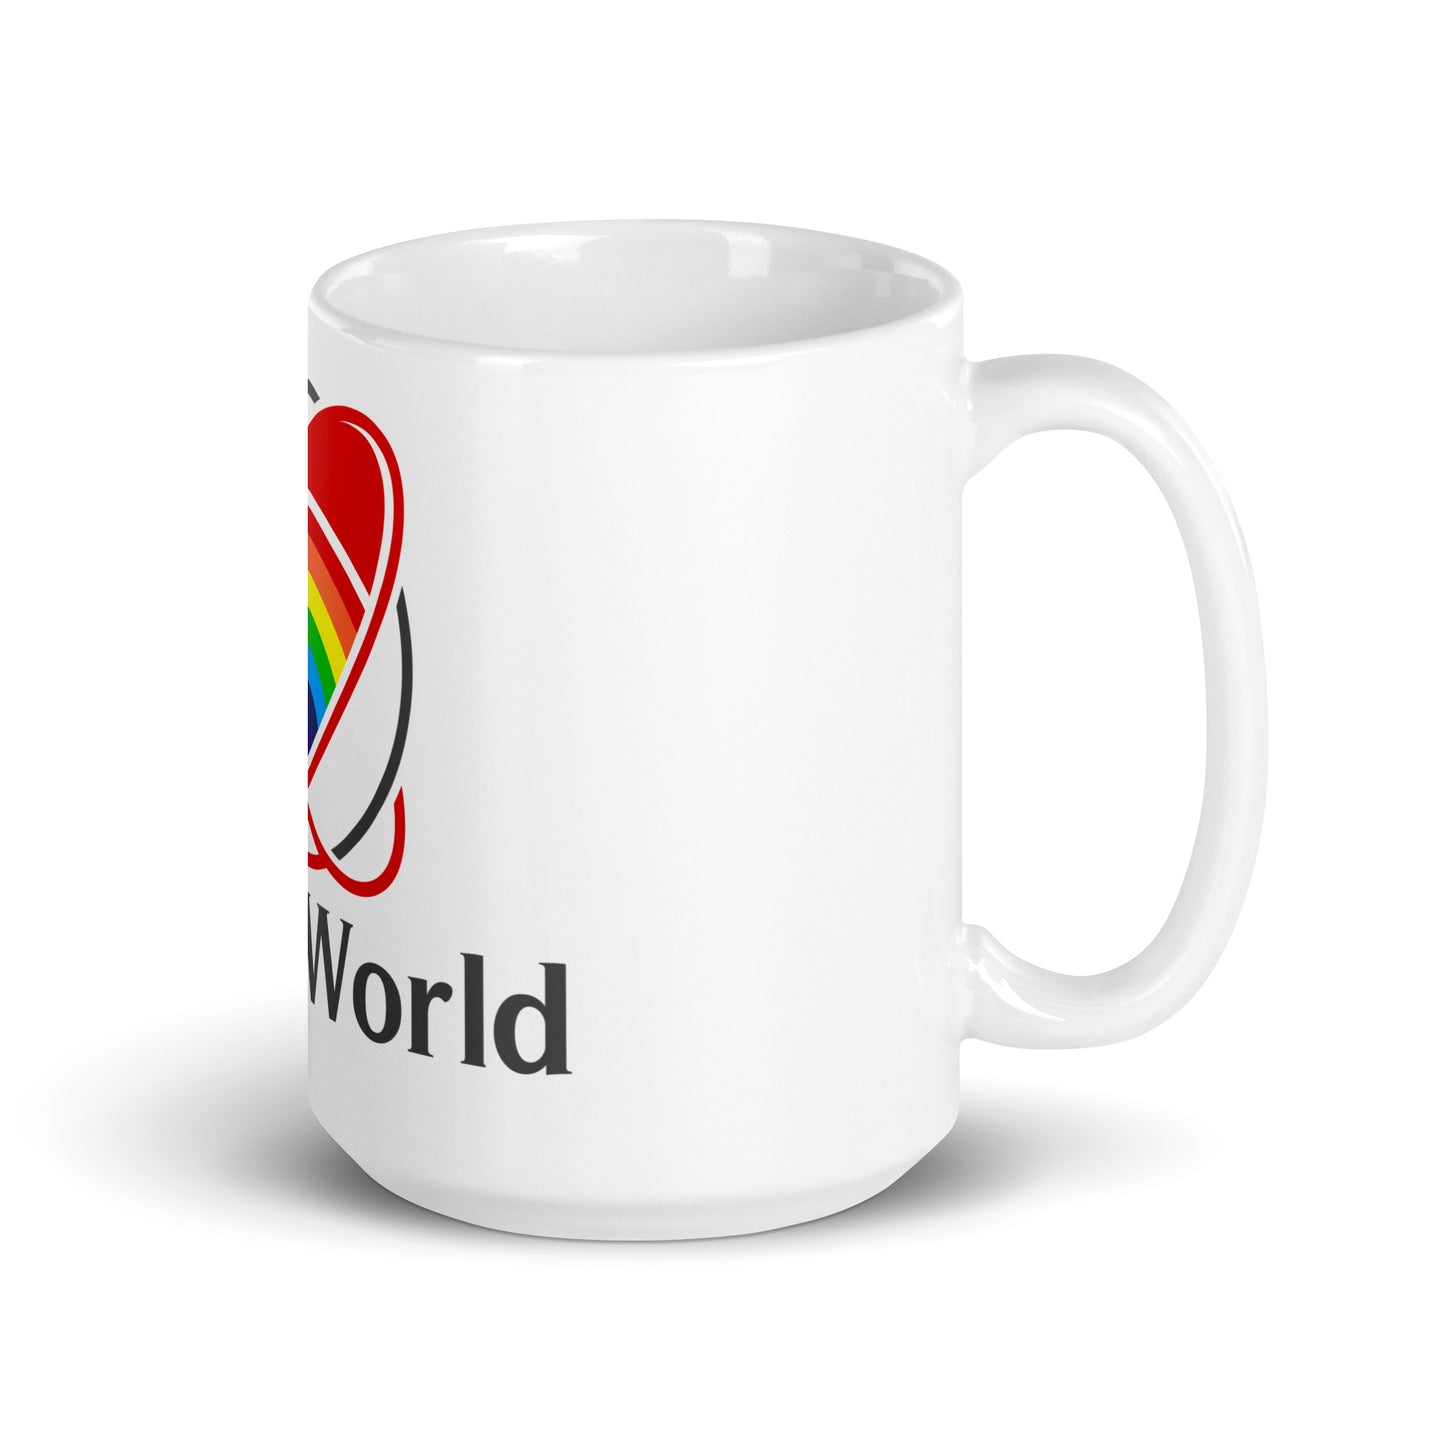 LuveyWorld White glossy mug